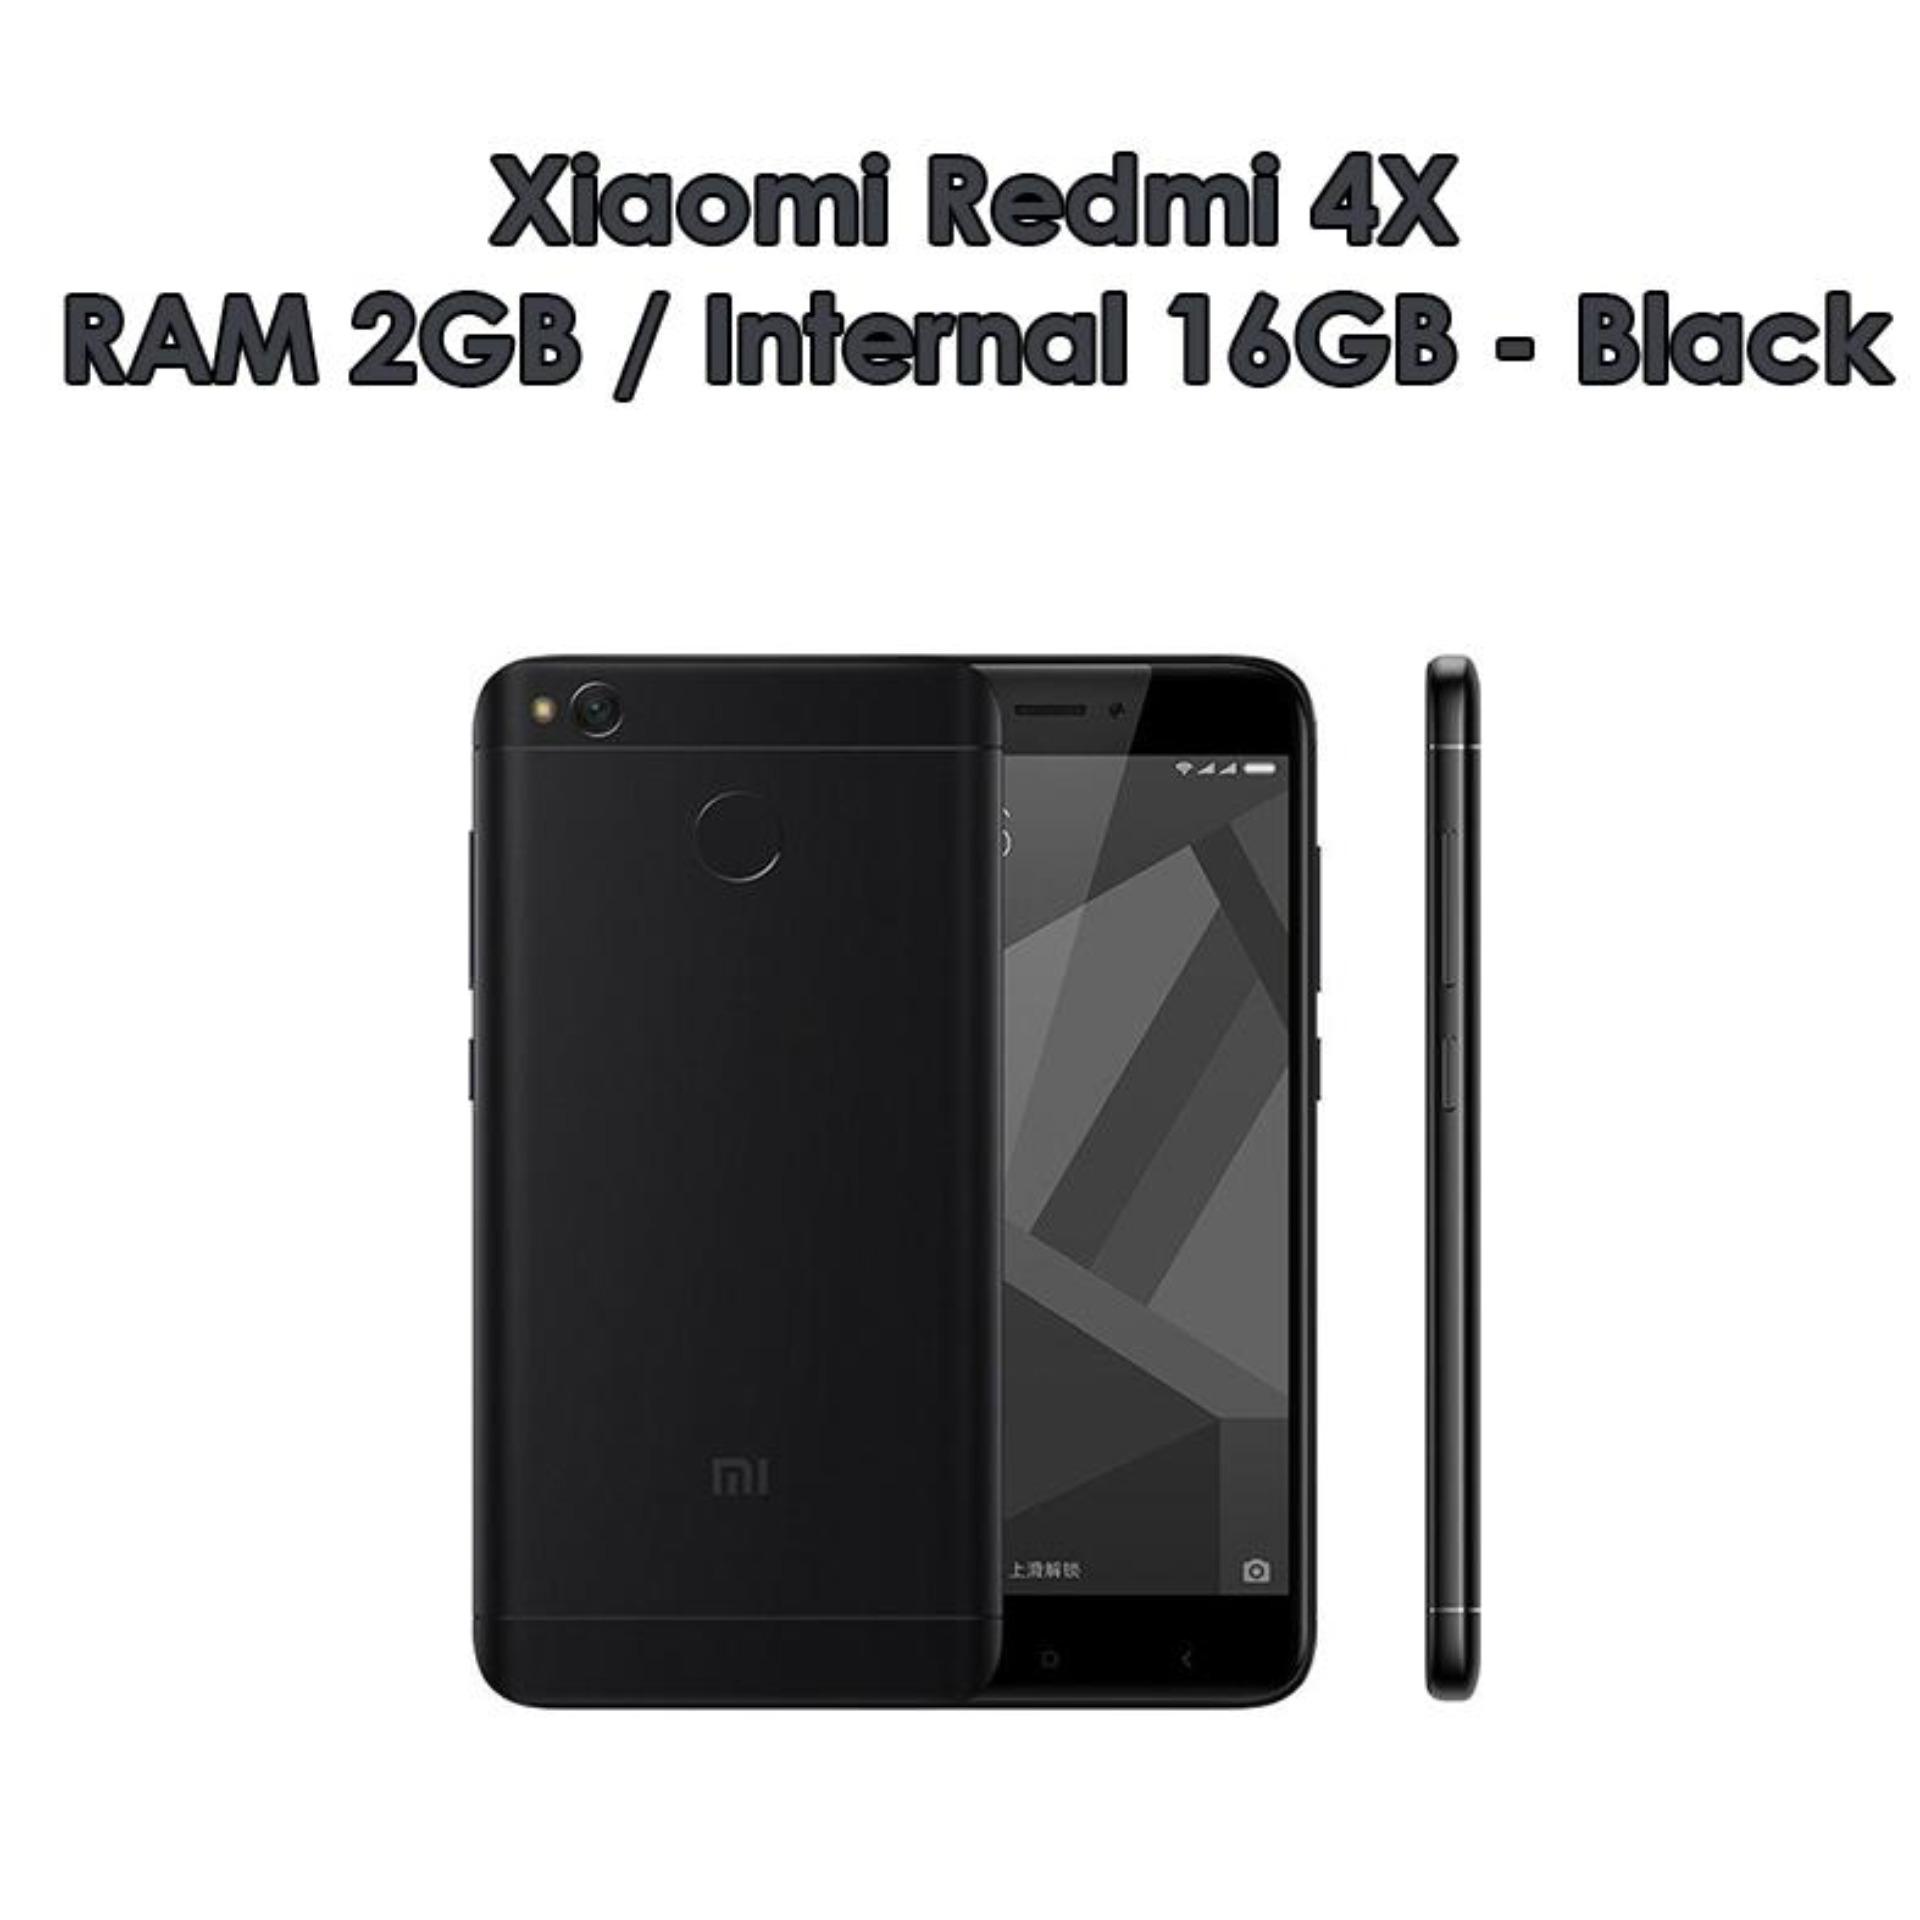  Xiaomi Redmi 4X - 4G LTE - RAM 2GB - ROM 16GB